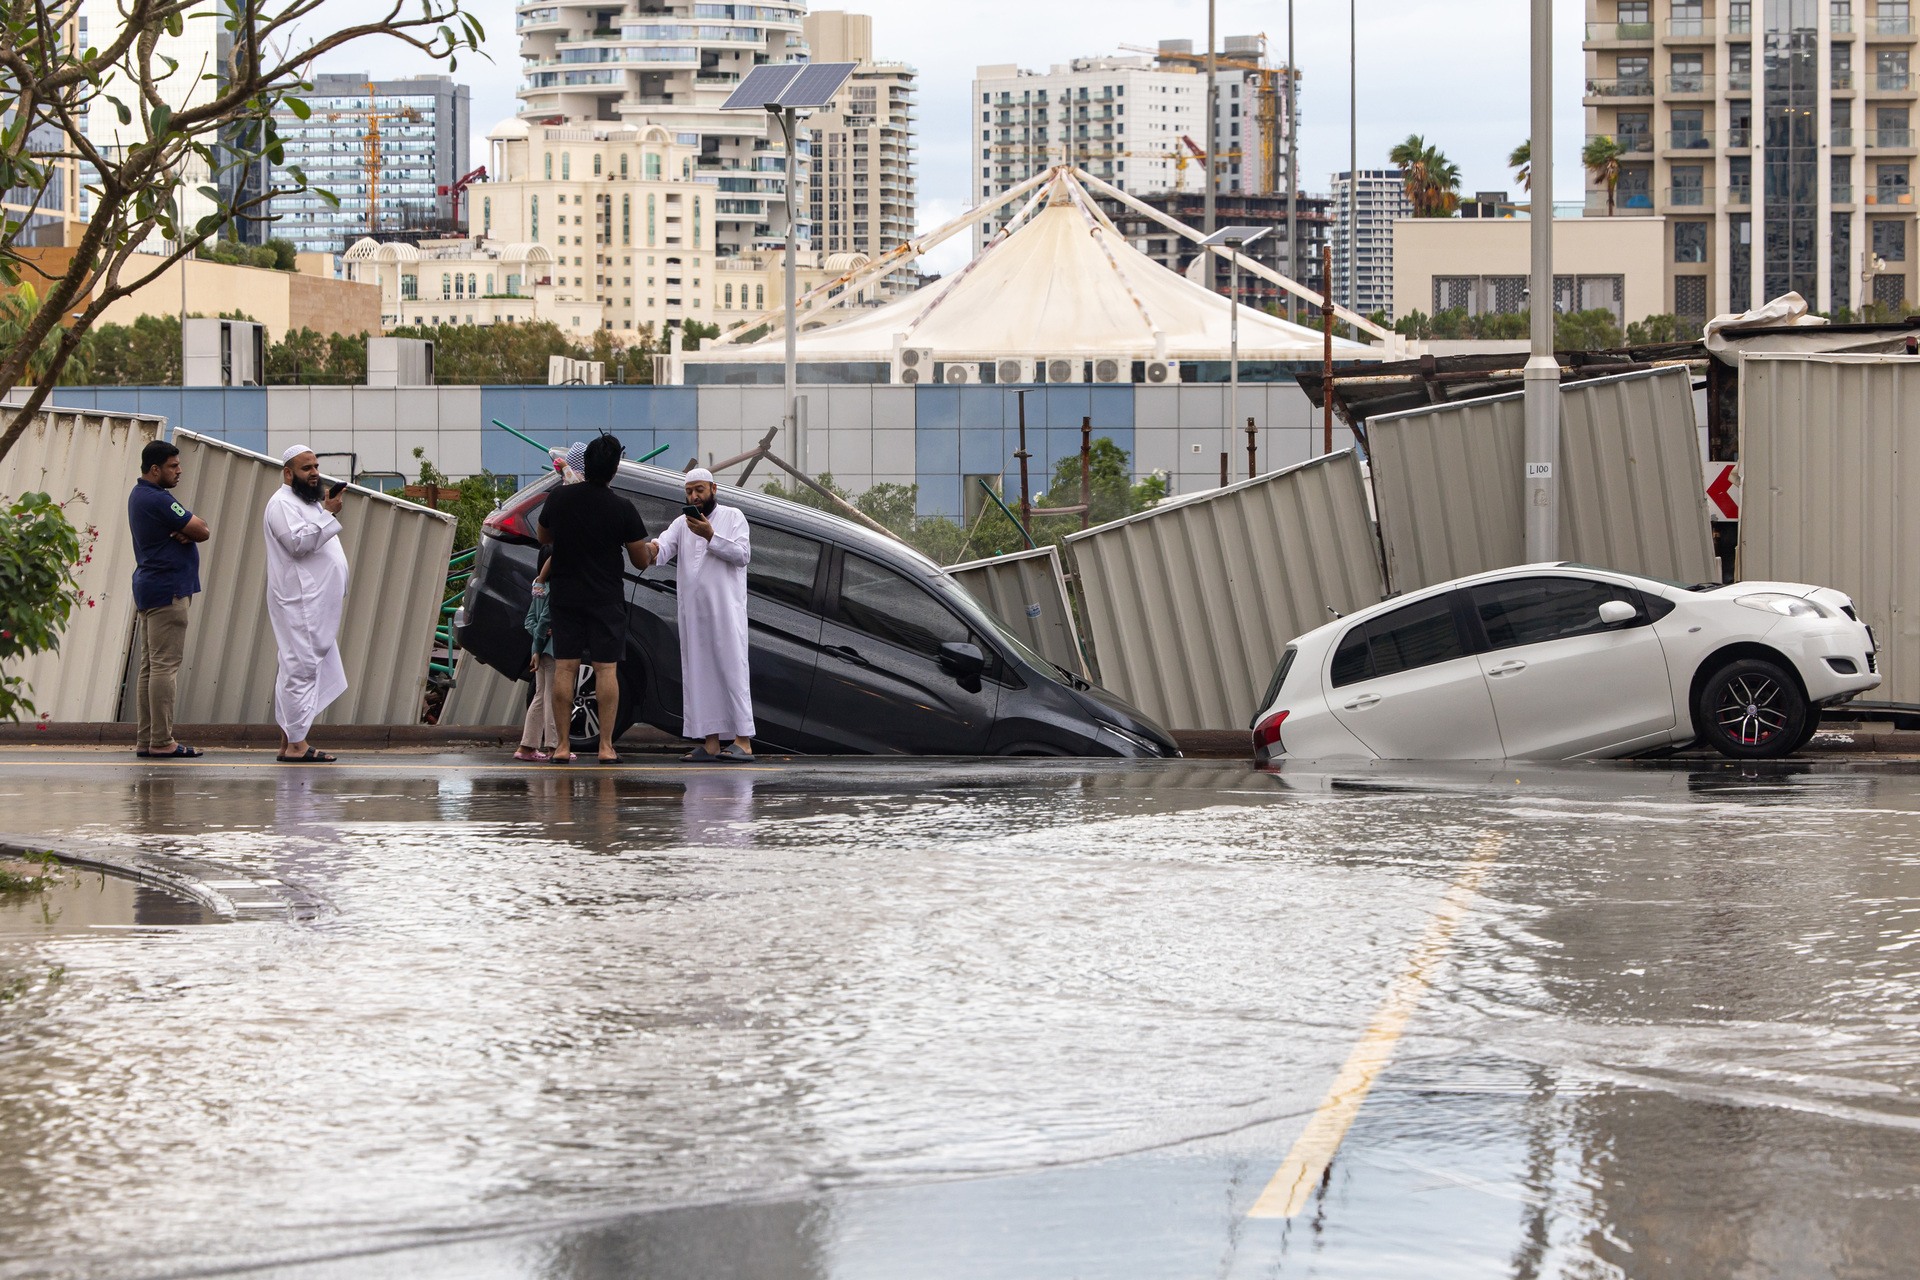 تضررت المركبات بعد انهيار جزء من الطريق بعد هطول أمطار غزيرة في منطقة مدينة دبي الرياضية في دبي، الإمارات العربية المتحدة، يوم الثلاثاء.